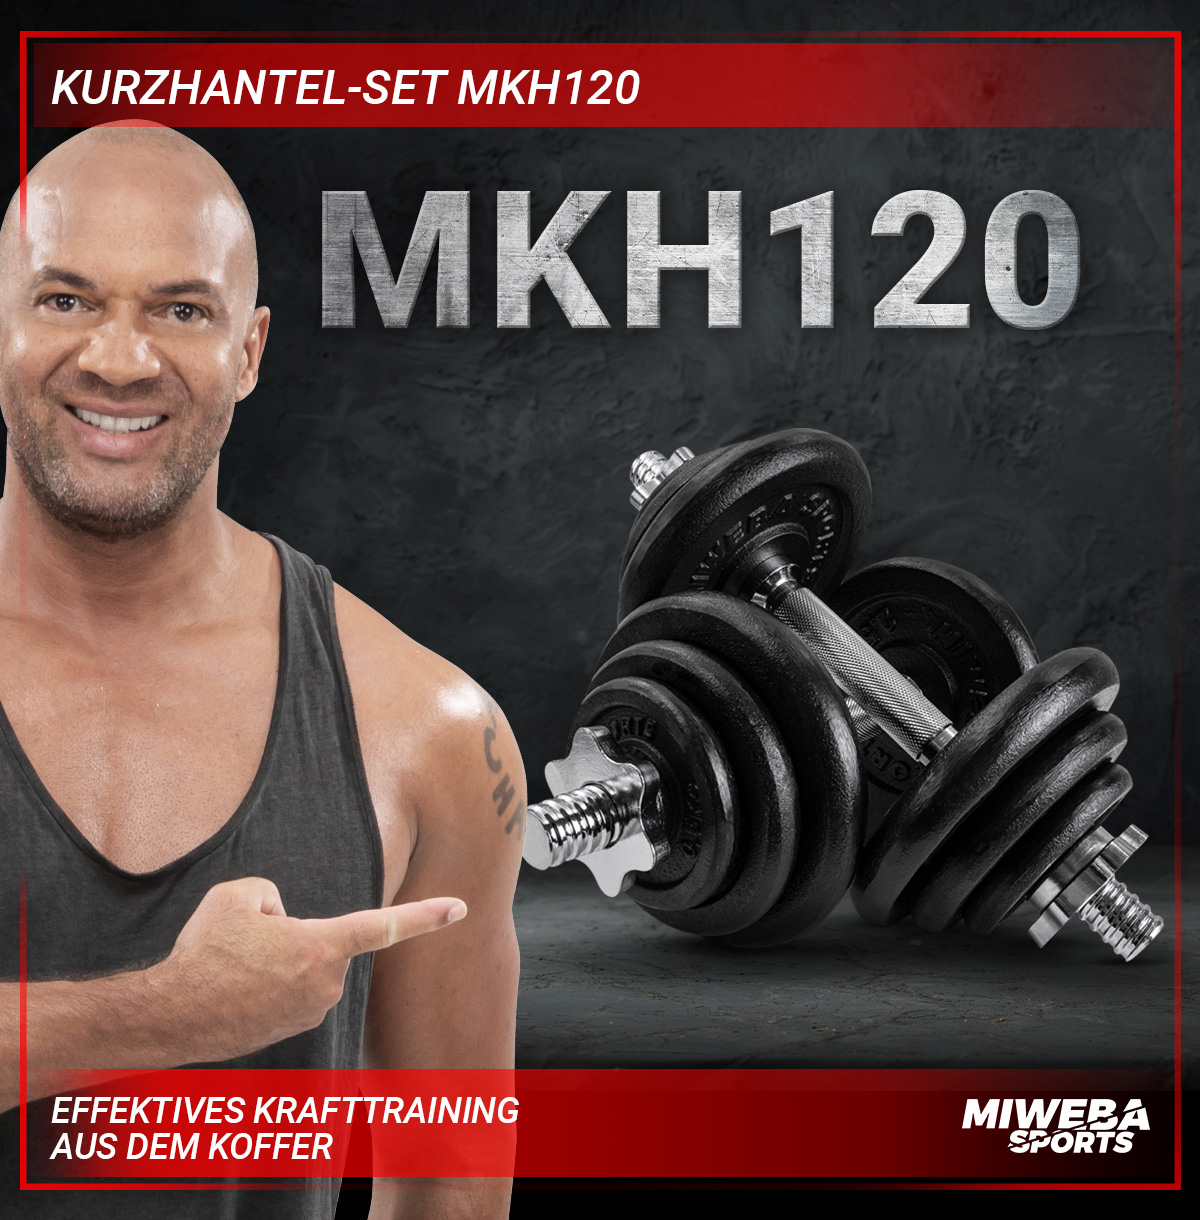 Kurzhantel SPORTS MIWEBA Silber MKH120 Set,